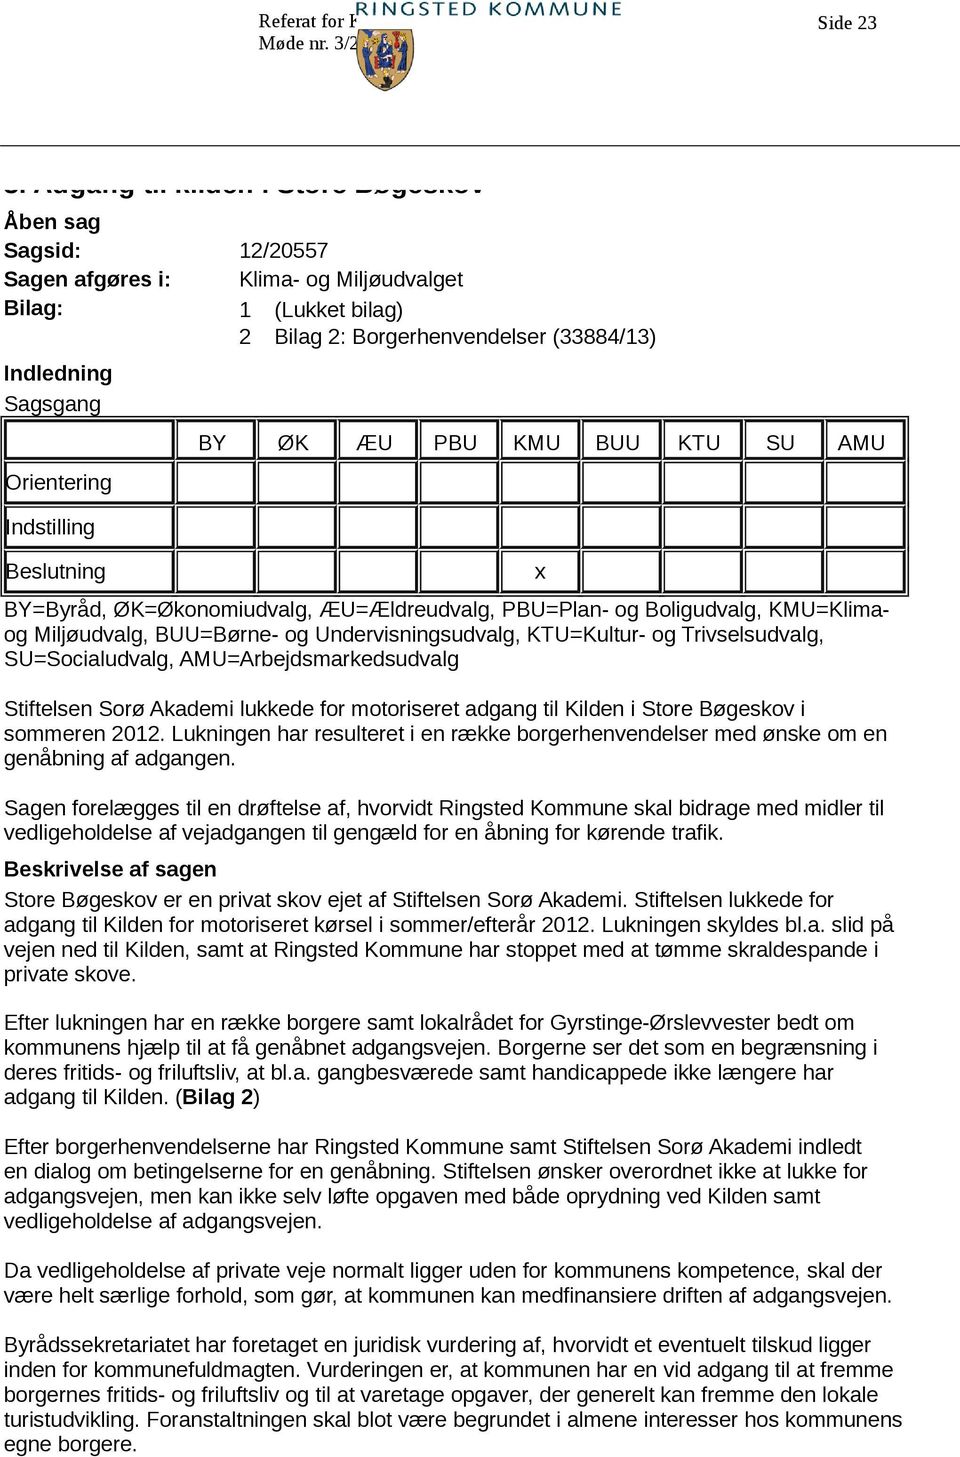 Trivselsudvalg, SU=Socialudvalg, AMU=Arbejdsmarkedsudvalg Stiftelsen Sorø Akademi lukkede for motoriseret adgang til Kilden i Store Bøgeskov i sommeren 2012.